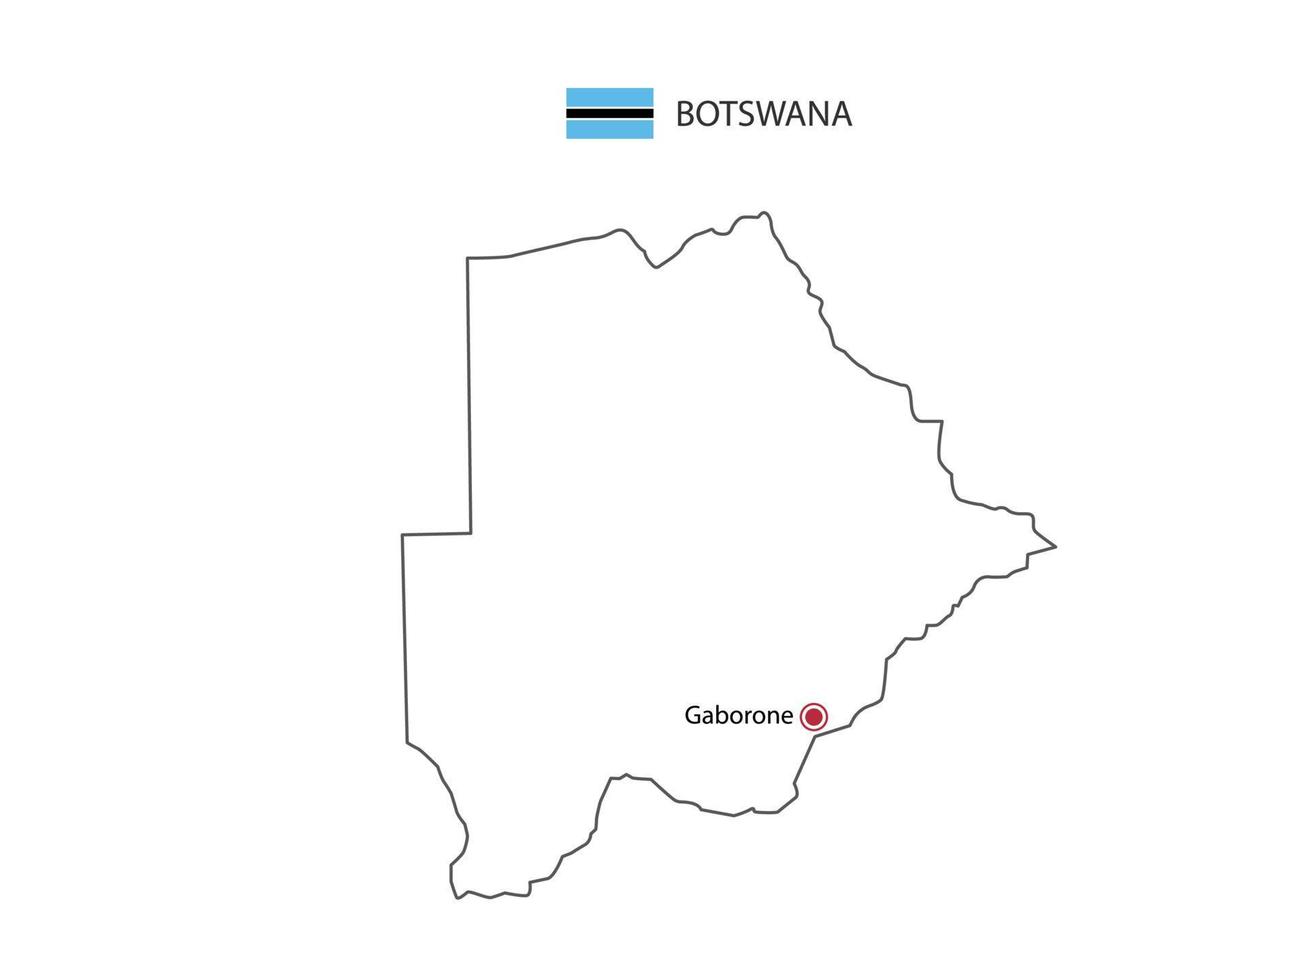 mão desenhar vetor de linha preta fina do mapa de botswana com capital gaborone em fundo branco.